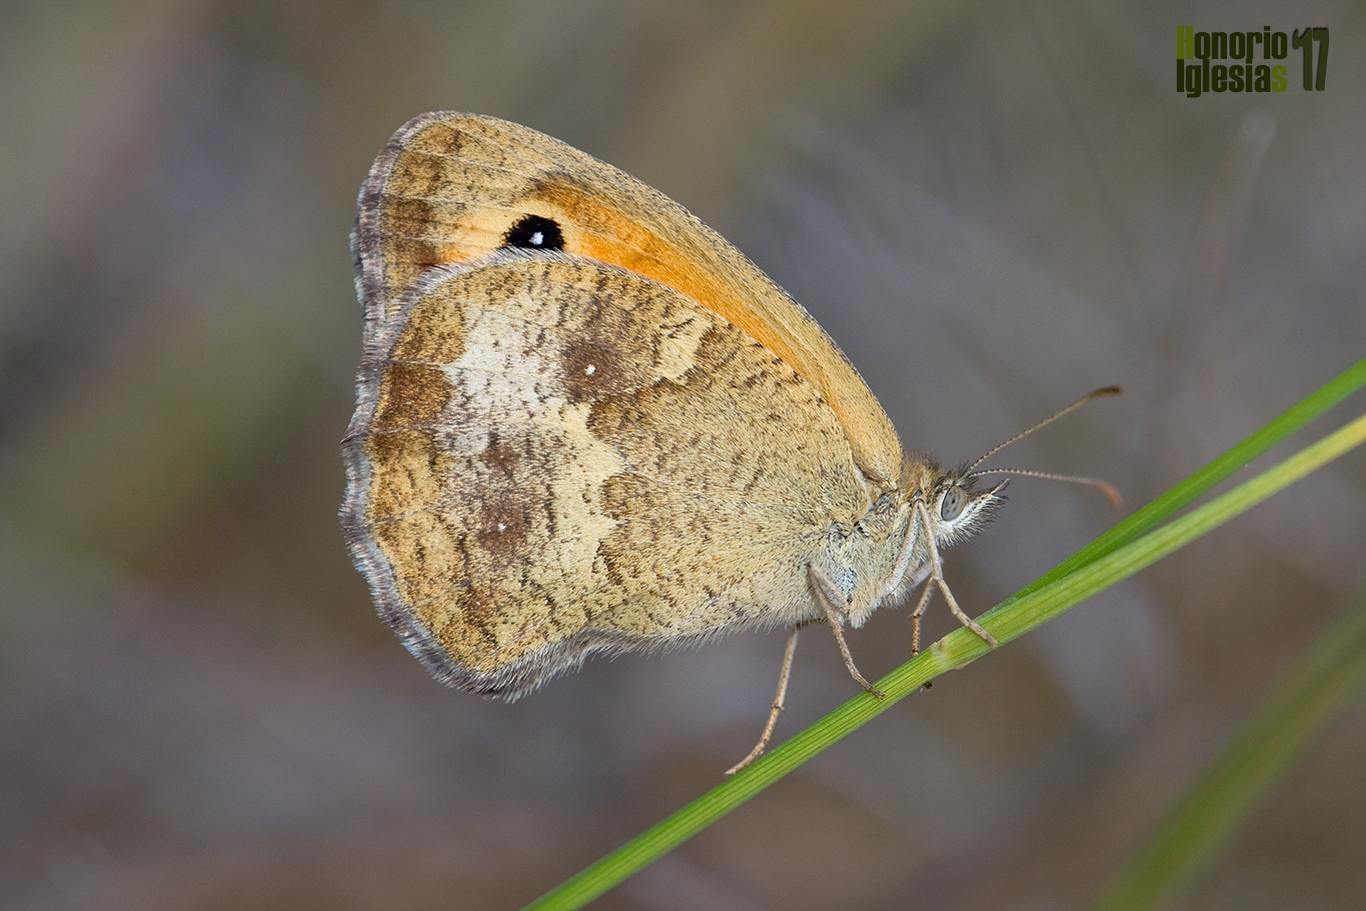 Ejemplar de mariposa lobito jaspeado o lobito agreste (Pyronia tithonus) mostrando su reverso alar con unos ocelos muy poco visibles en el ala posterior.